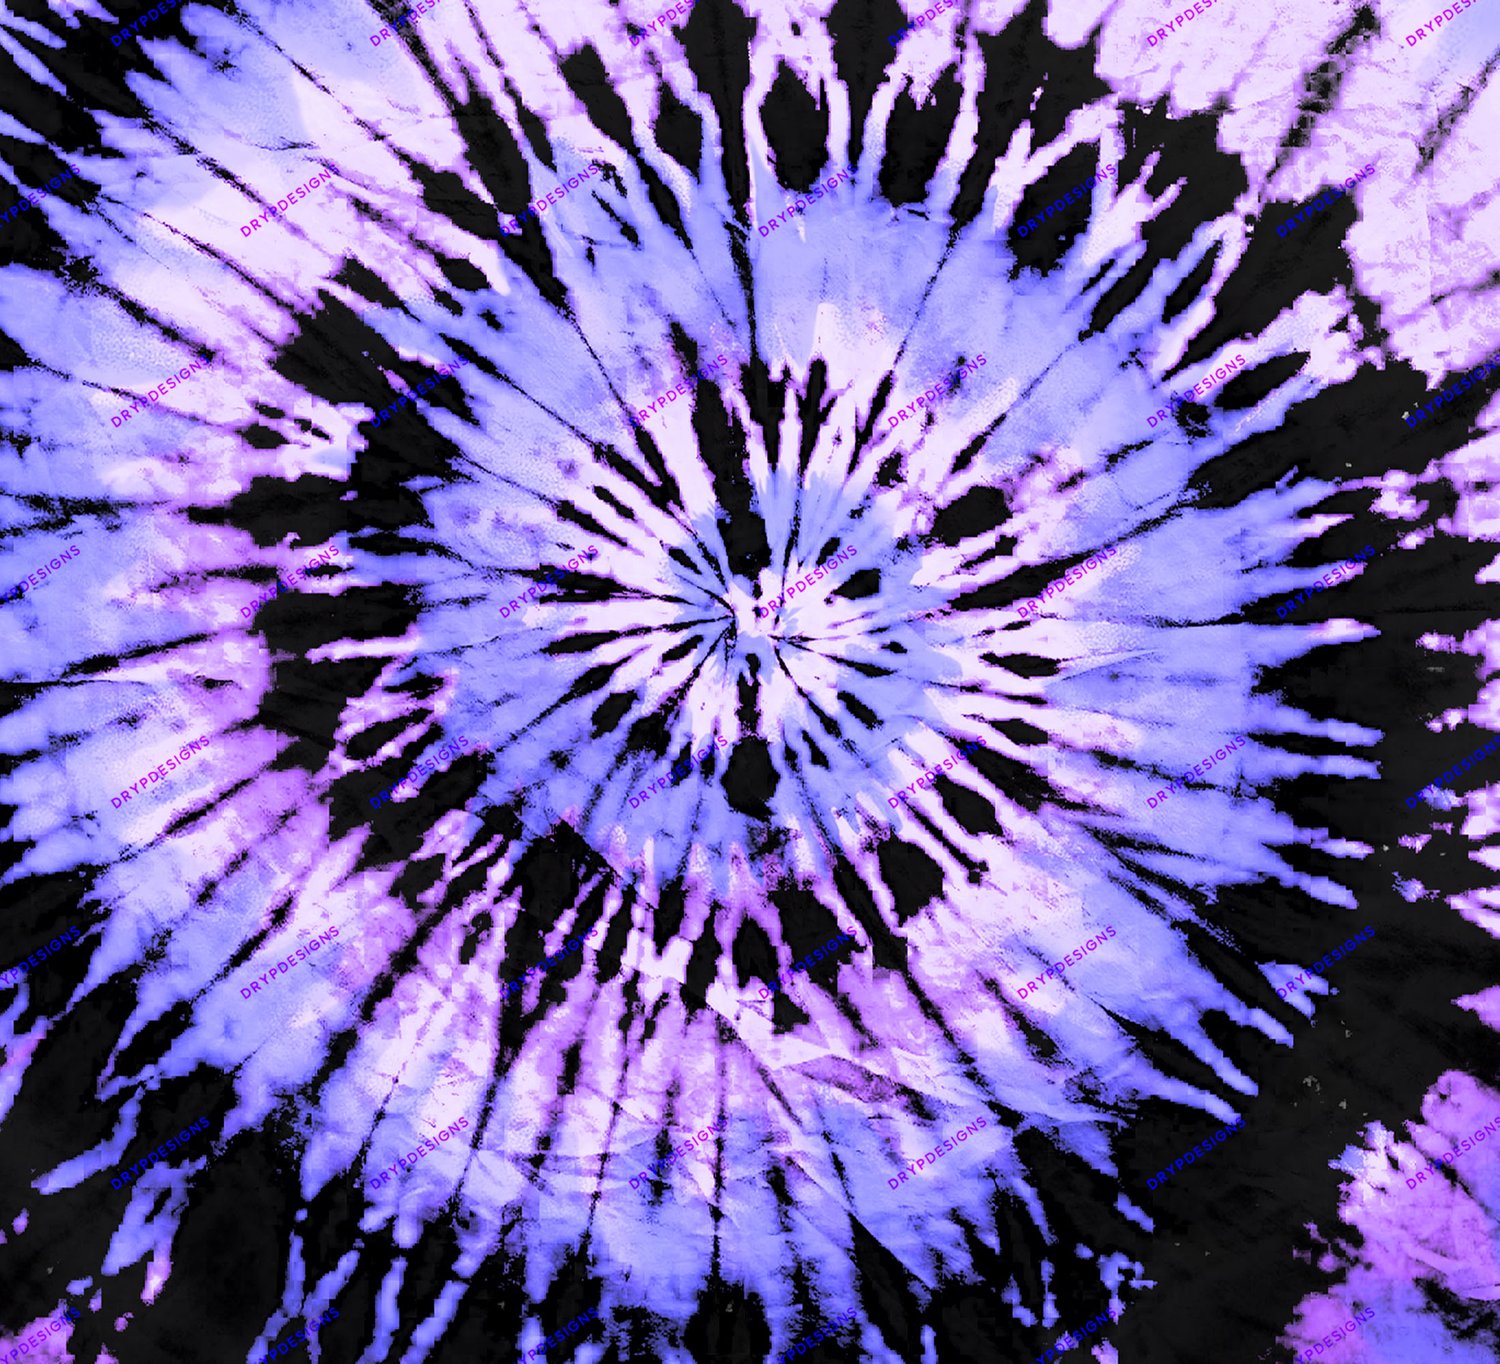 Nền kỹ thuật số nhuộm tím hoa lavender: Tận hưởng những hình ảnh dịu dàng và tinh tế từ nền kỹ thuật số nhuộm tím hoa lavender này. Các họa tiết đều rất tươi sáng và đầy sức sống, tạo ra một không gian yên bình và thư giãn, đồng thời cung cấp cho bạn một nguồn cảm hứng đầy tiềm năng.